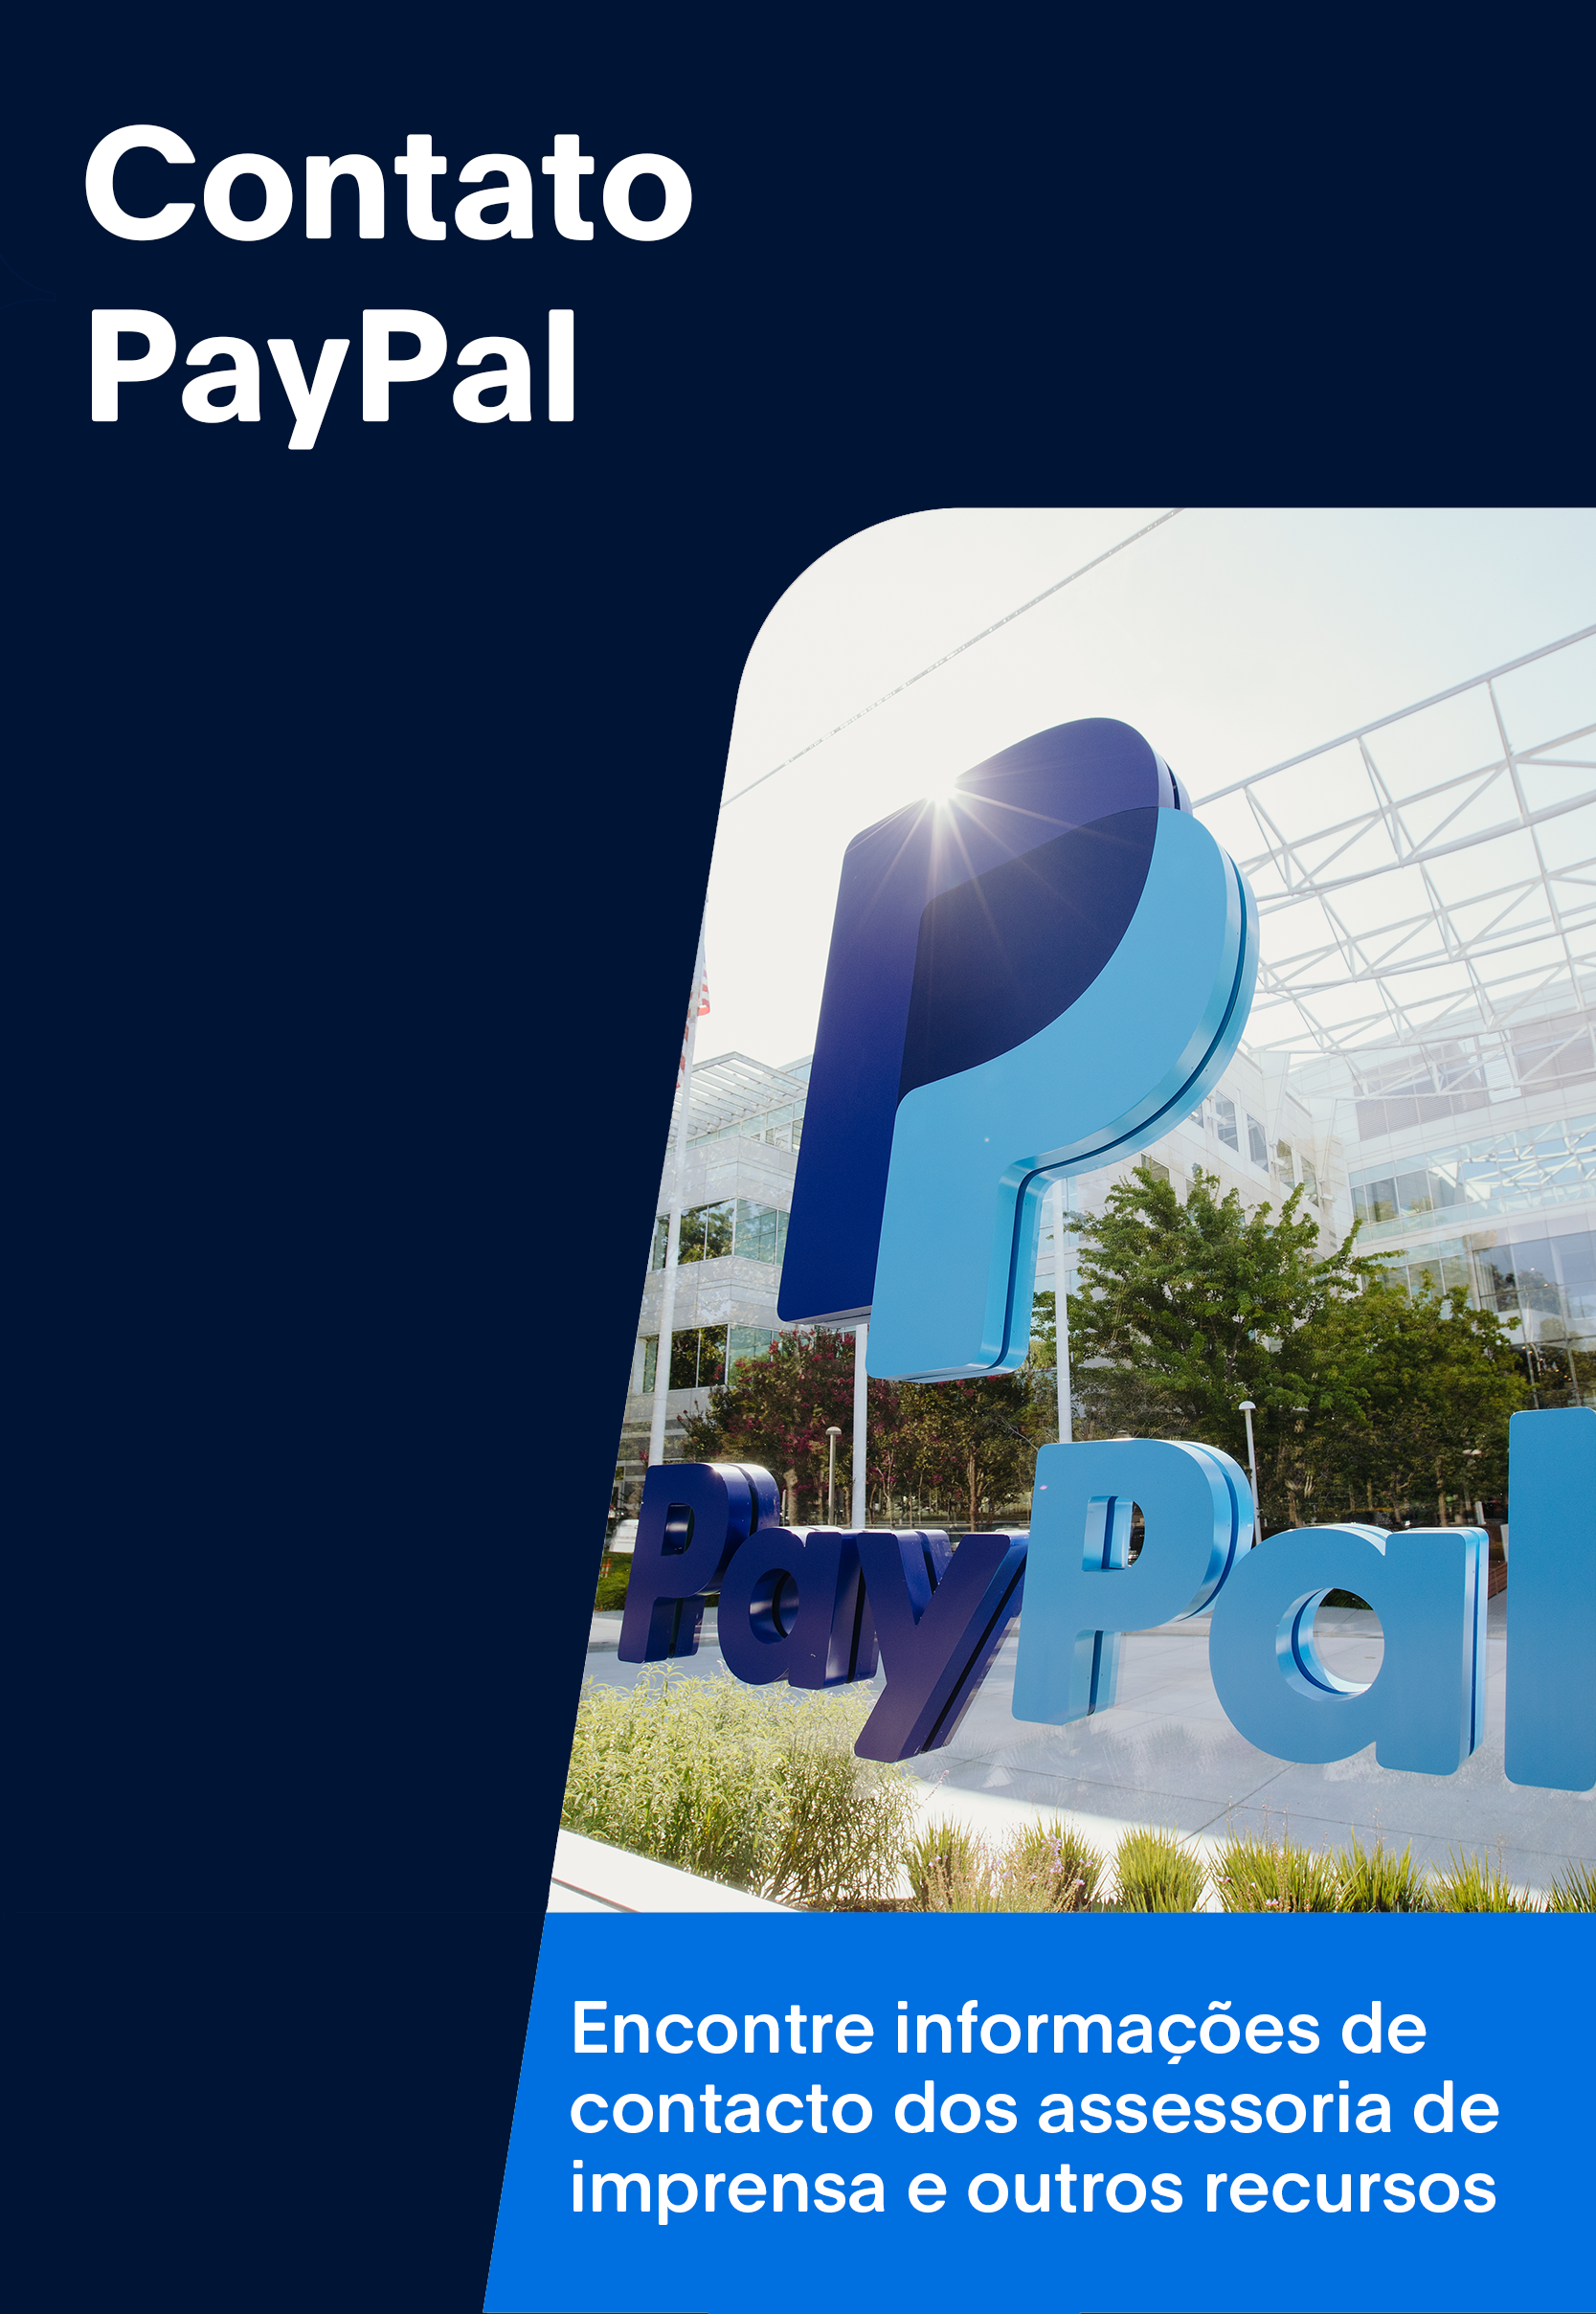 Contato PayPal: Abrir em uma nova janela